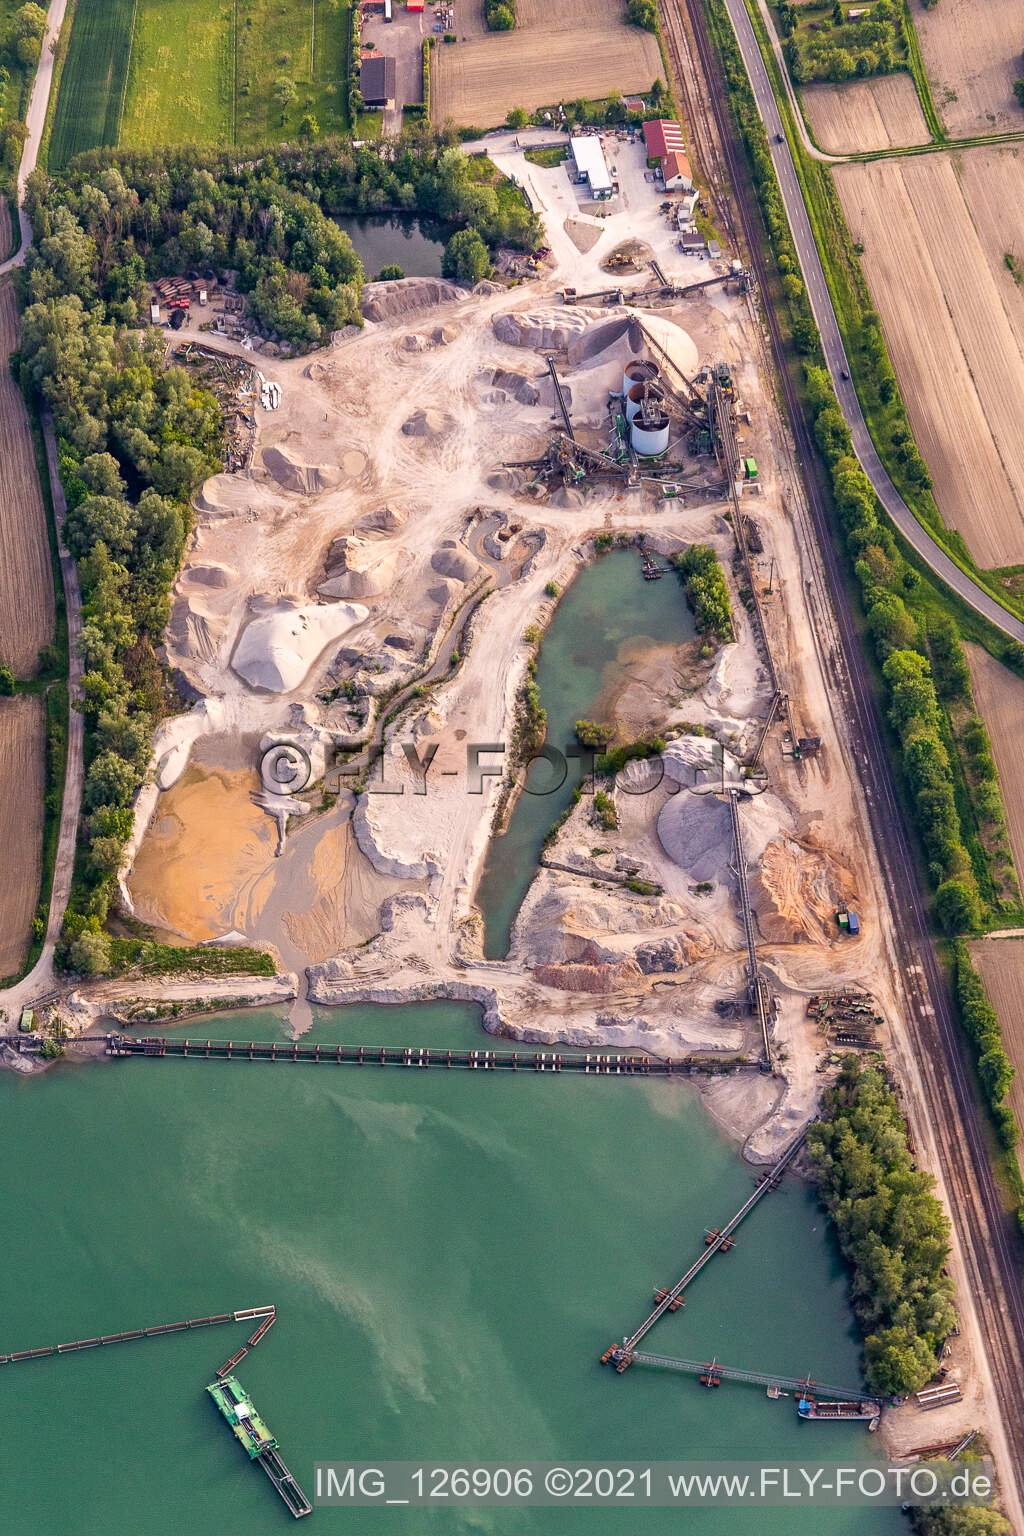 Photographie aérienne de Lac de la carrière de minéraux HBM Hagenbacher Bau à Hagenbach dans le département Rhénanie-Palatinat, Allemagne